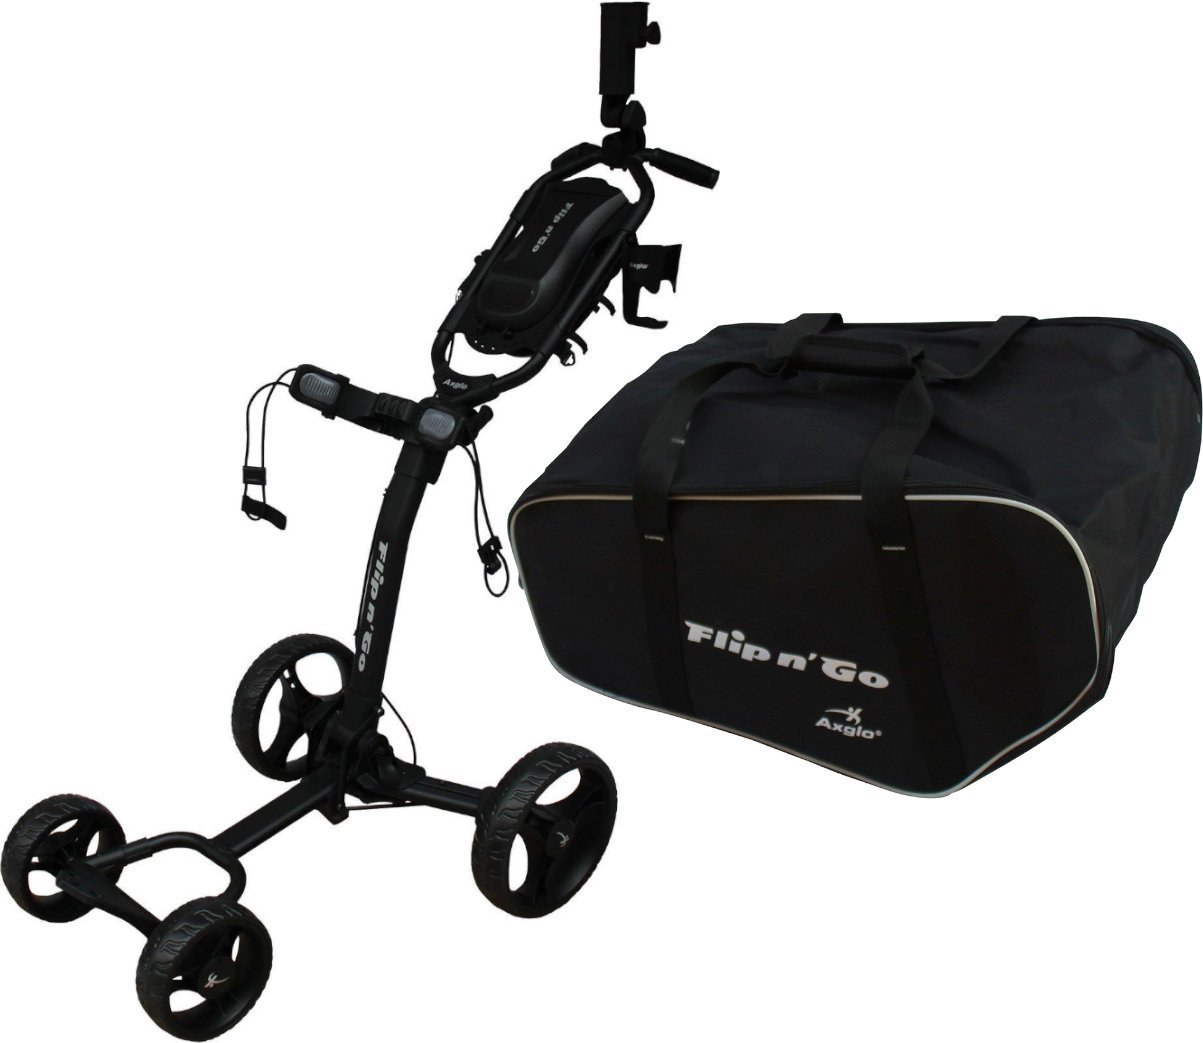 Manuálny golfový vozík Axglo Flip N Go 4 Wheel Trolley Black/Black SET Manuálny golfový vozík